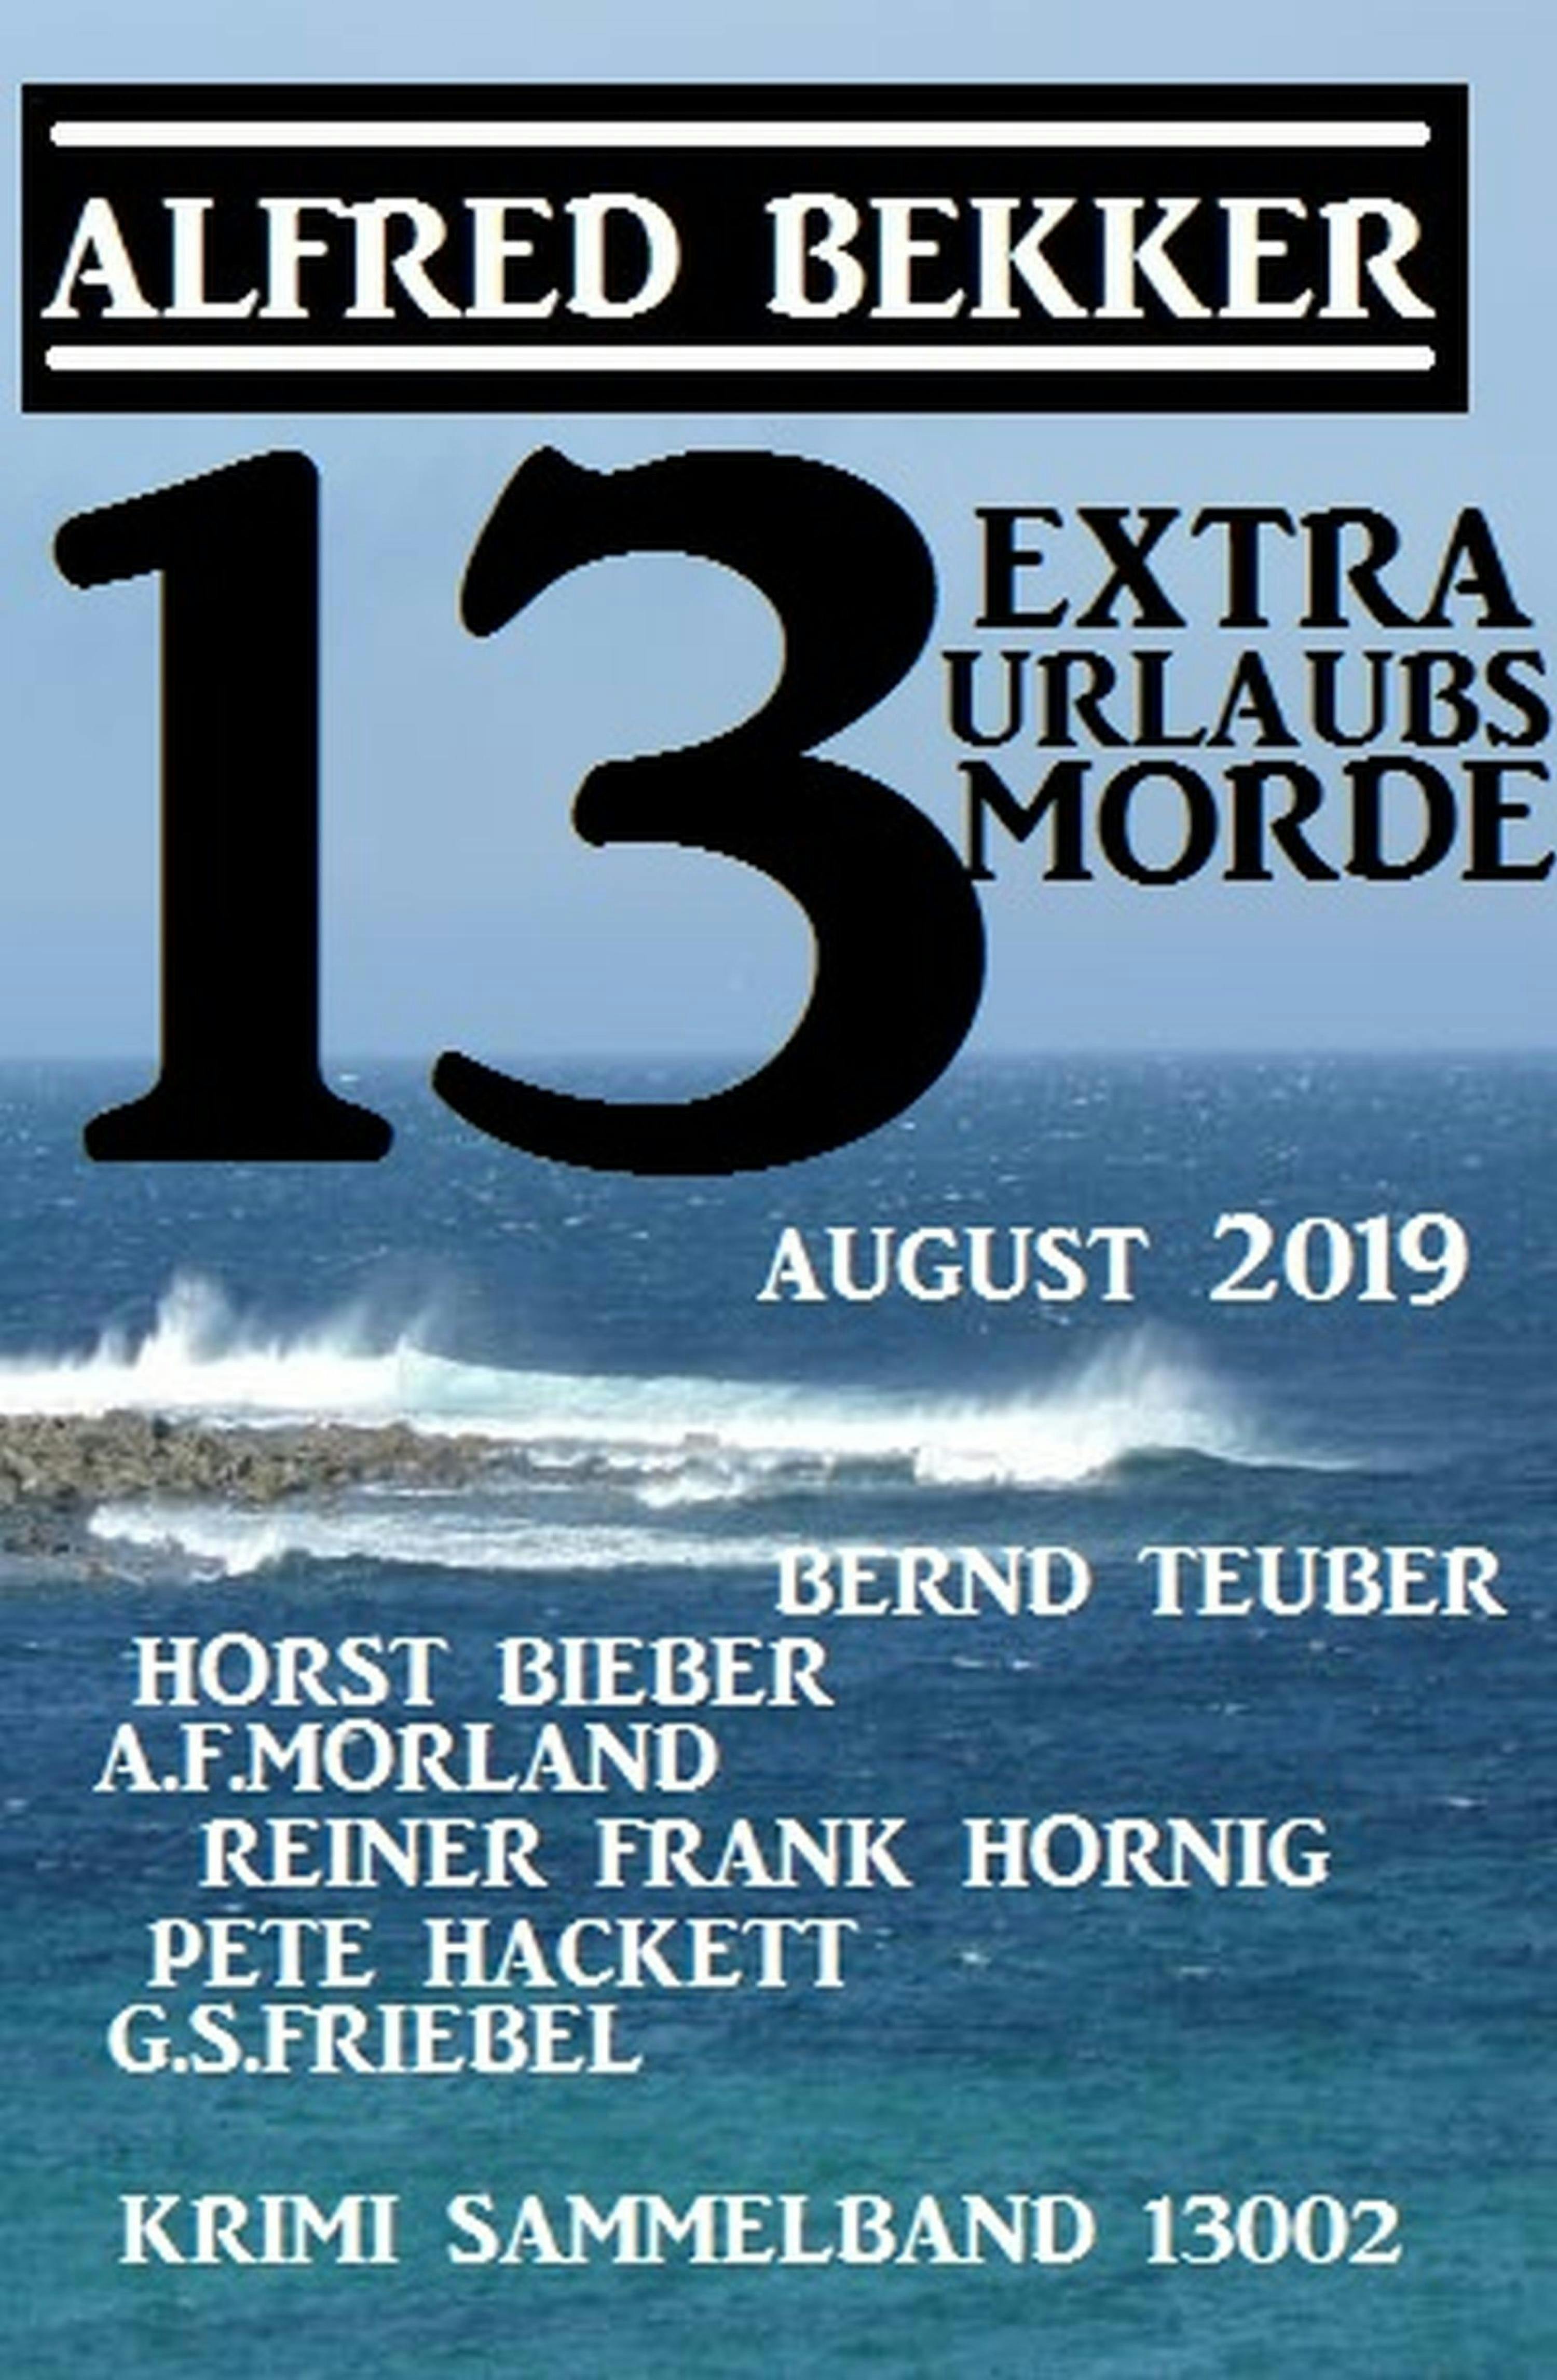 13 Extra Urlaubsmorde August 2019 Krimi Sammelband 13002 - Reiner Frank Hornig, Alfred Bekker, G. S. Friebel, A. F. Morland, Bernd Teuber, Pete Hackett, Horst Bieber